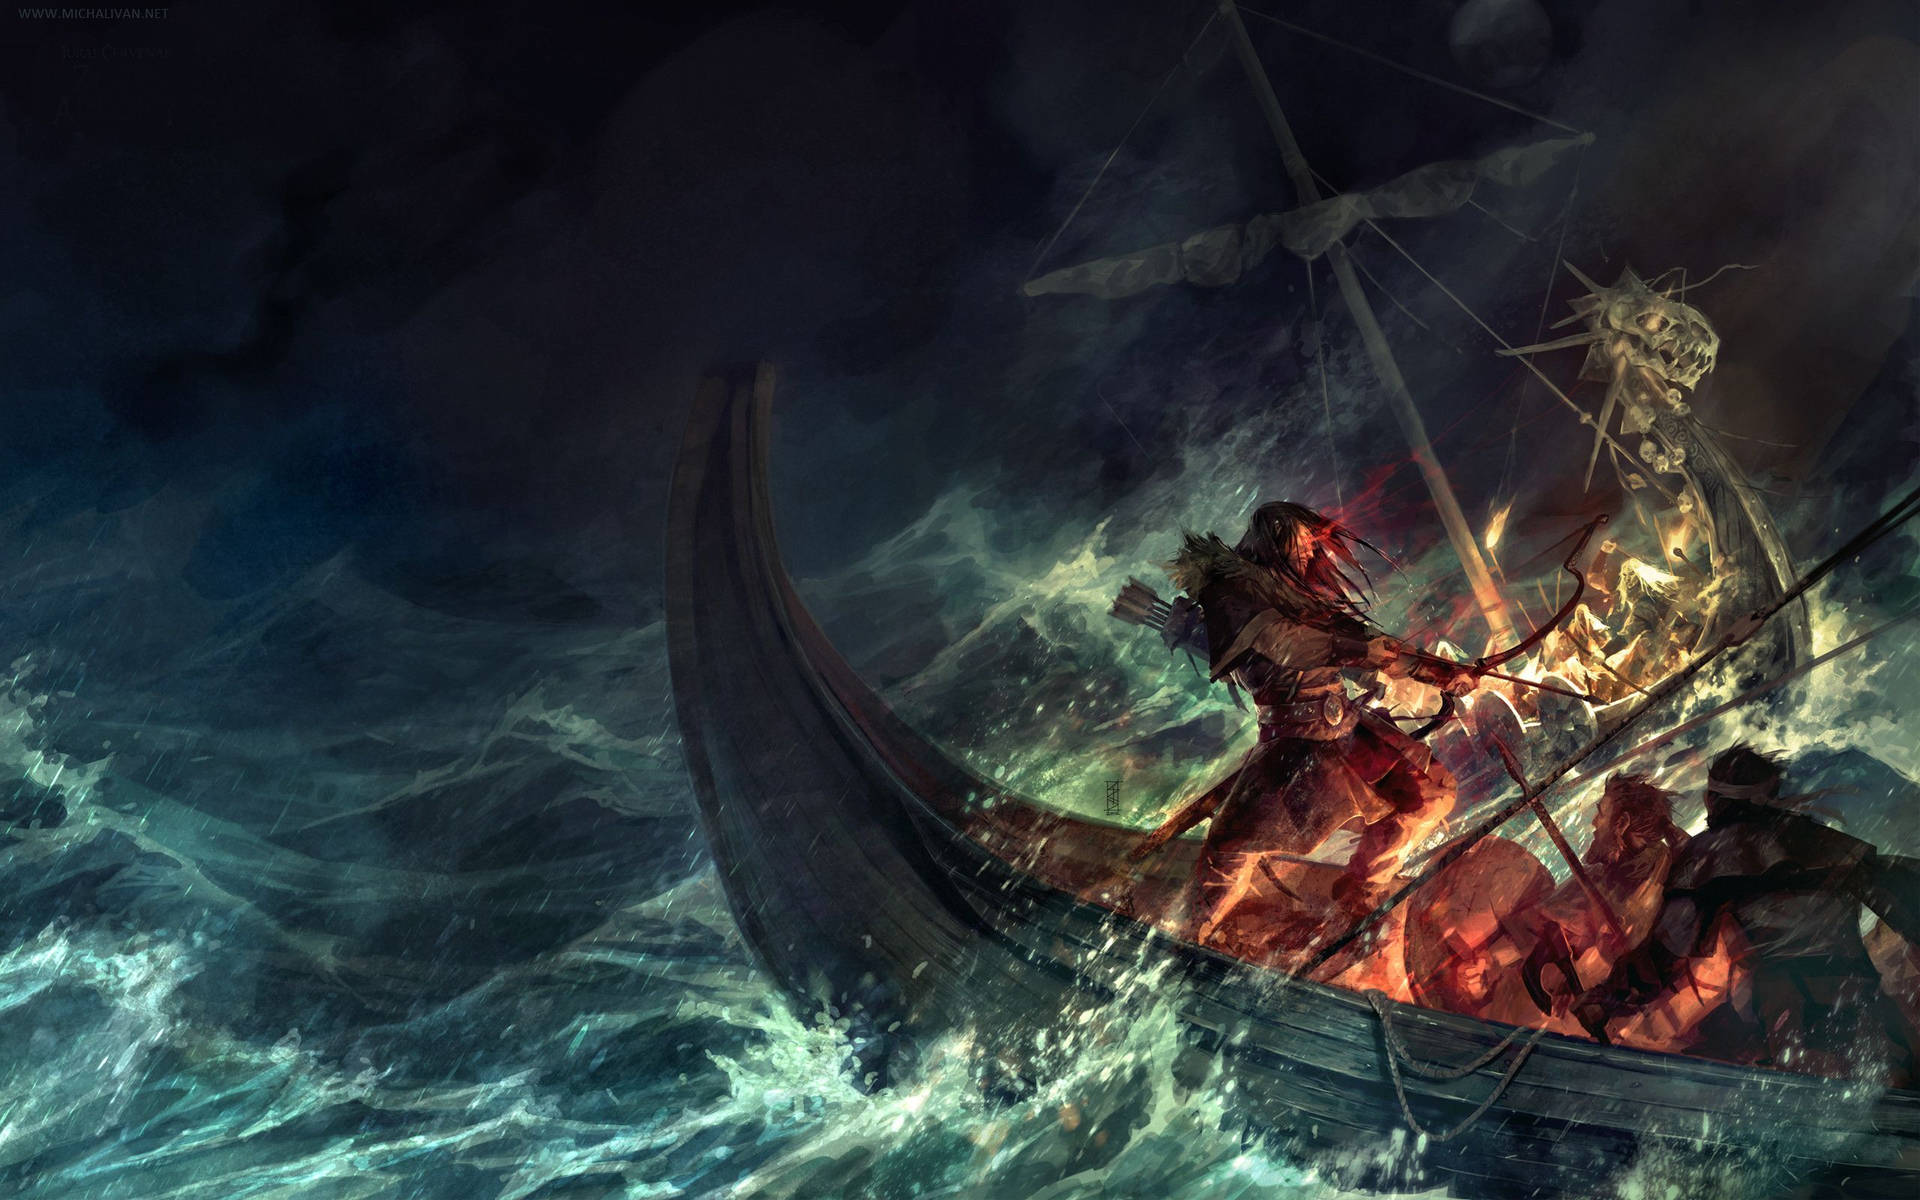 A Viking ship sails through a turbulent sea Wallpaper